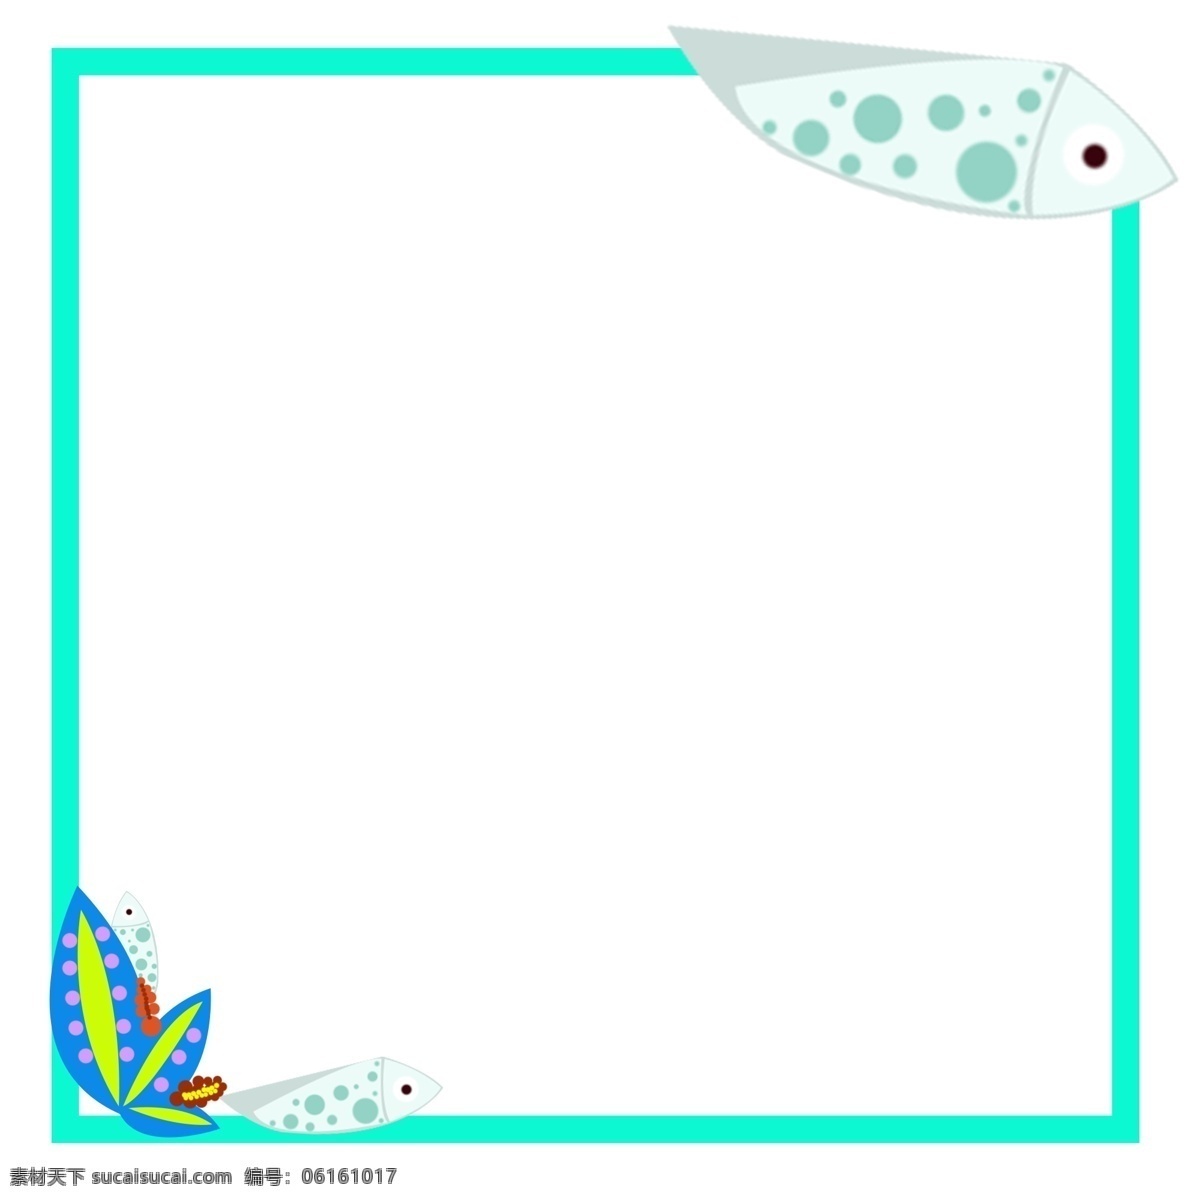 小鱼 装饰 边框 插画 鱼儿 蓝色边框 方形边框 小鱼装饰边框 水藻 卡通小鱼边框 正方形边框